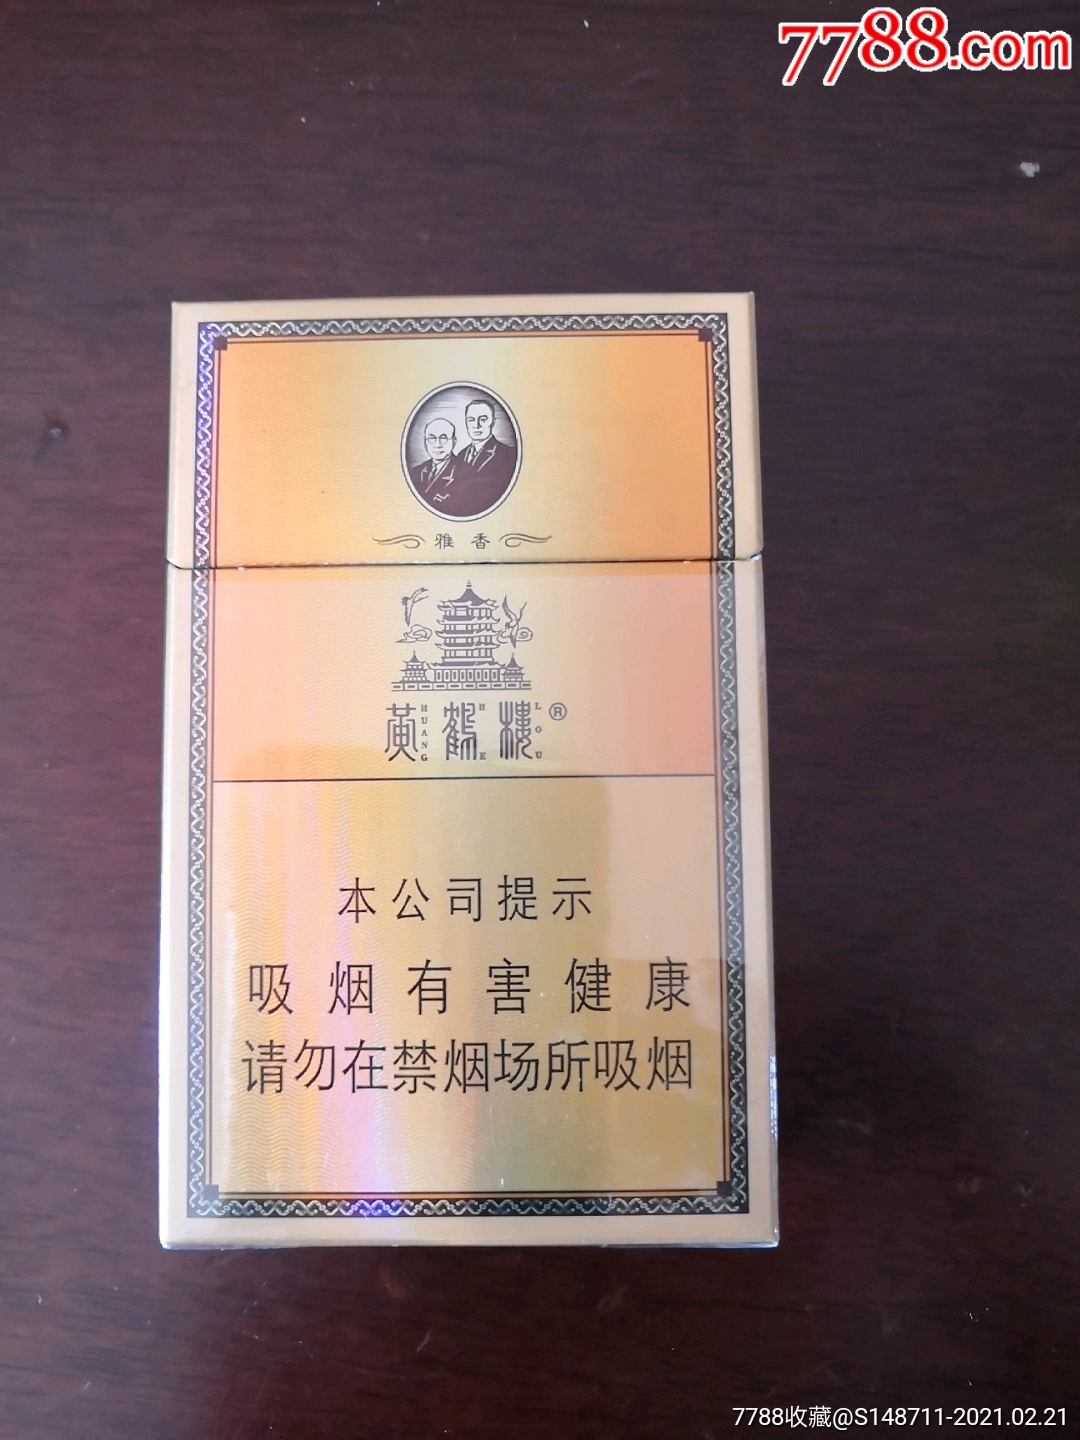 黄鹤楼精装烟标图片